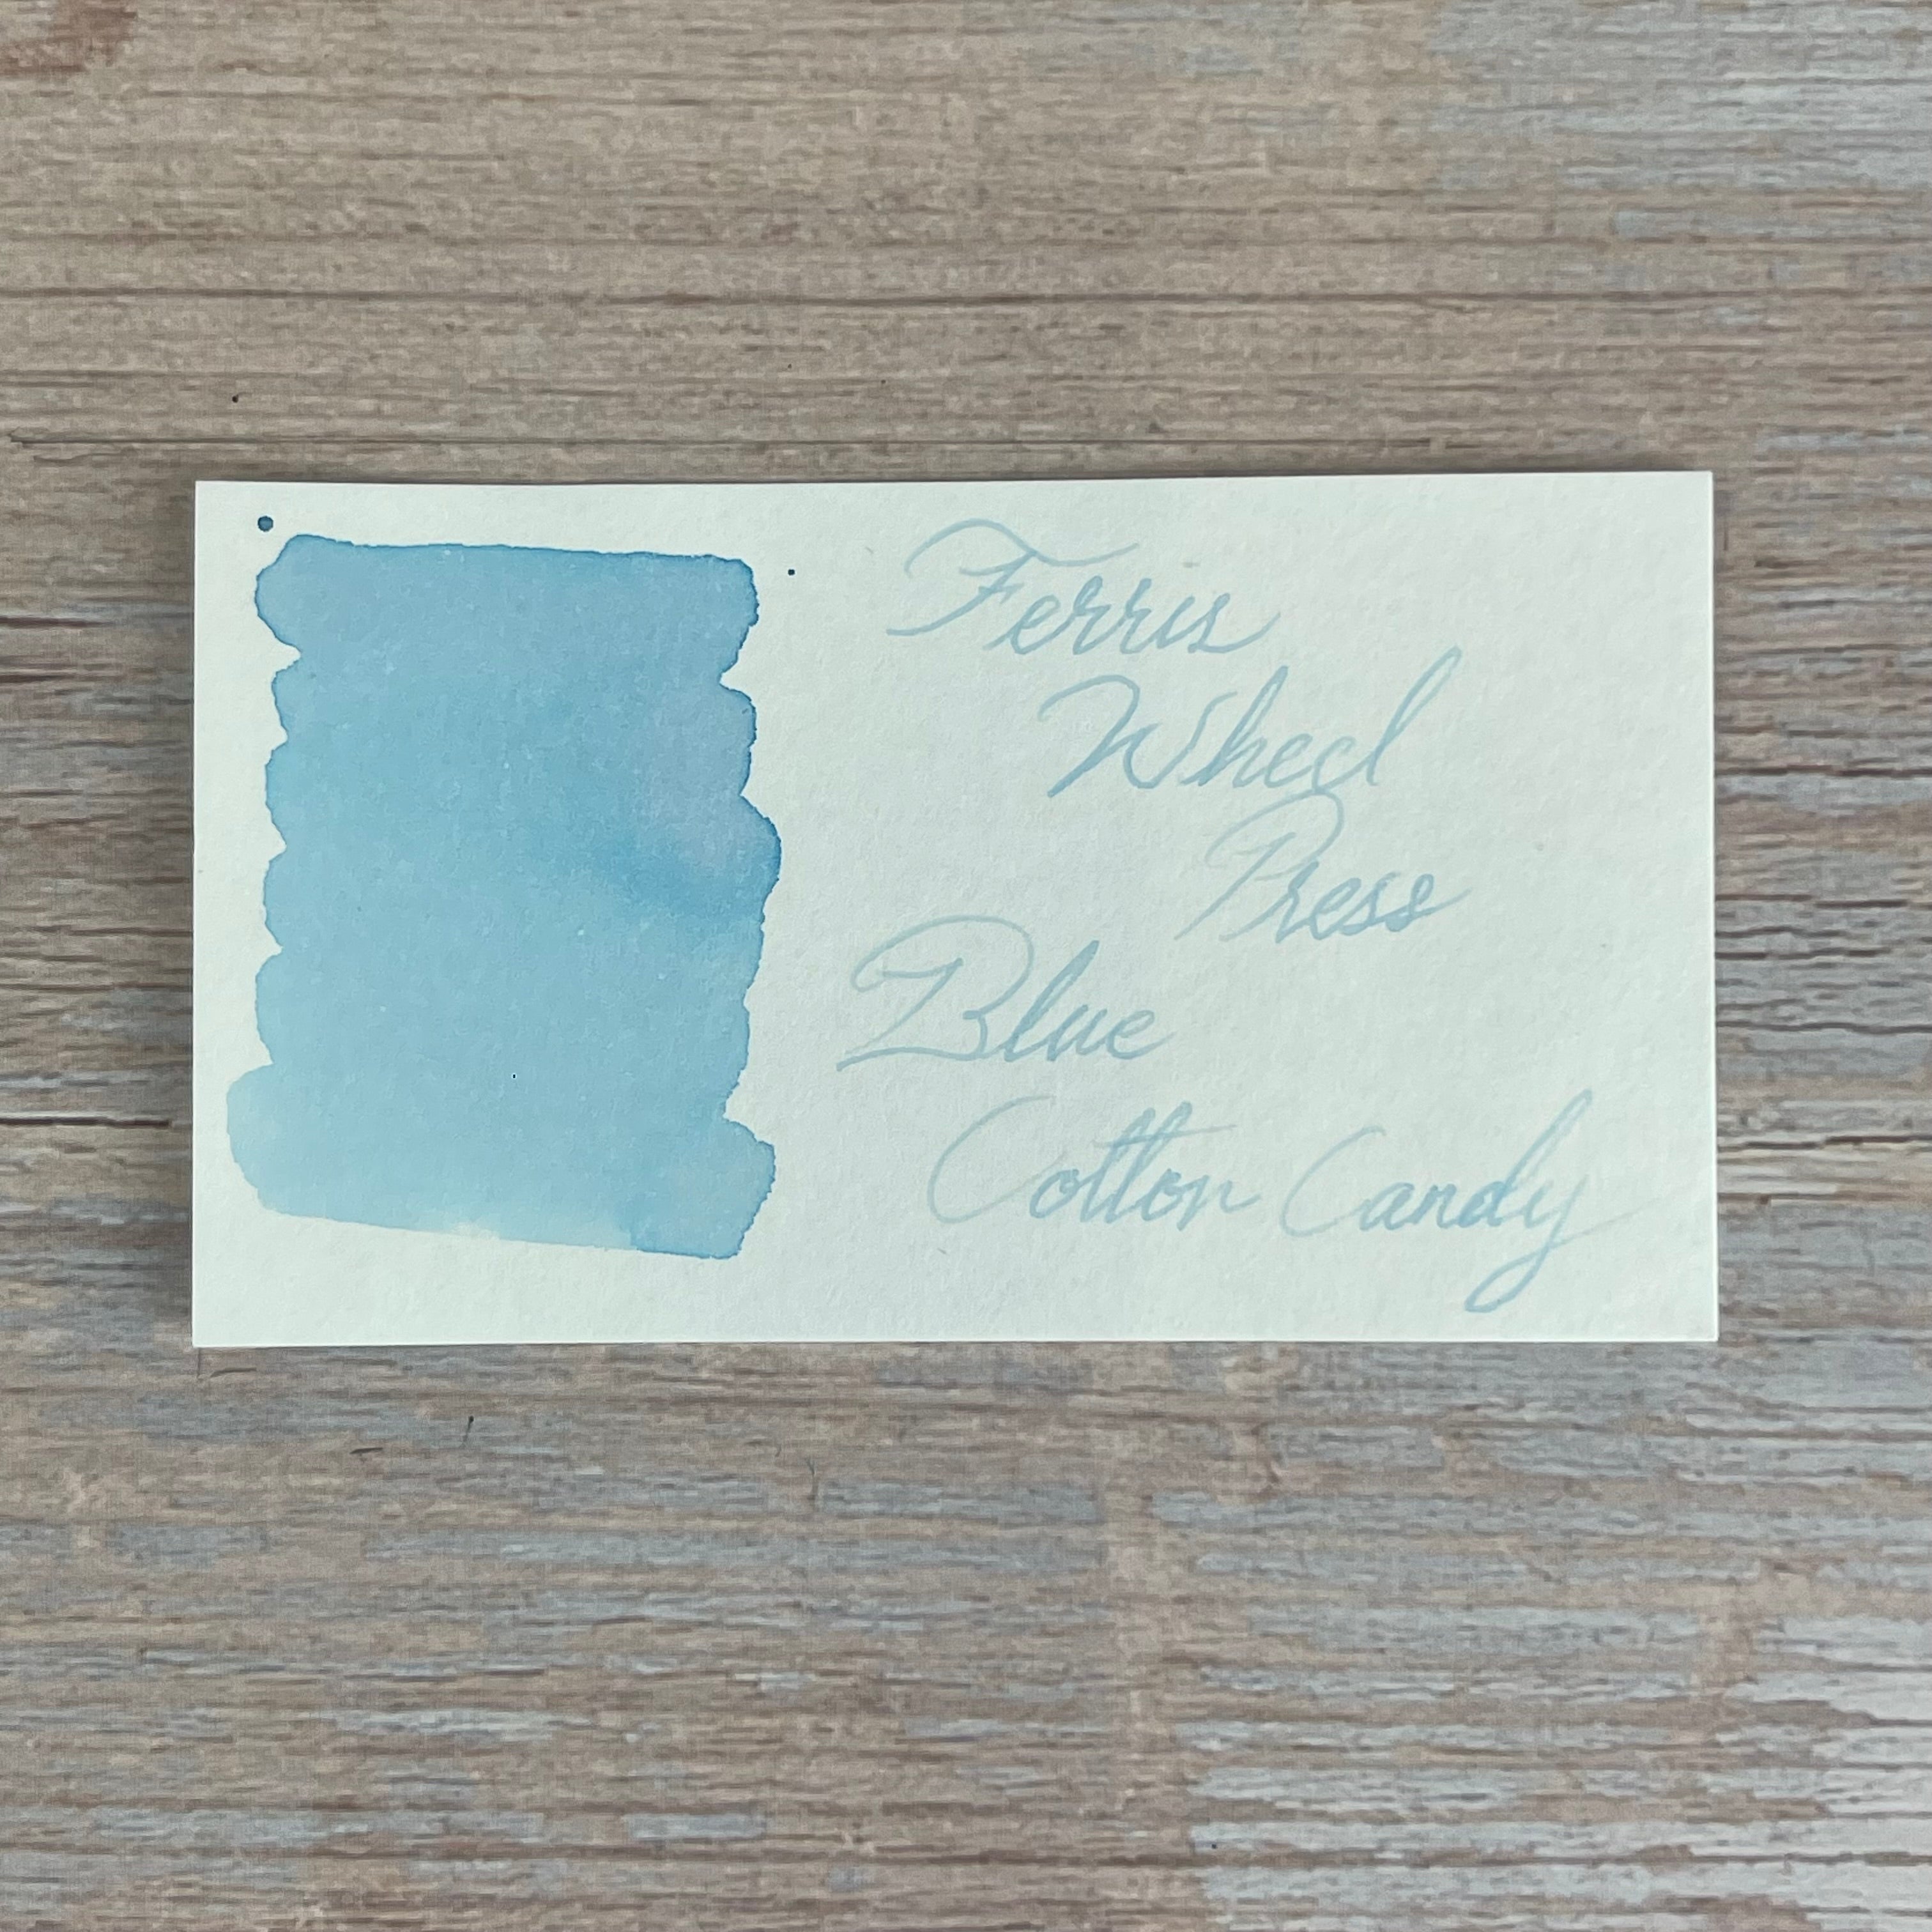 Ferris Wheel Press Fountain Pen Ink - Jelly Bean Blue, 38 ml